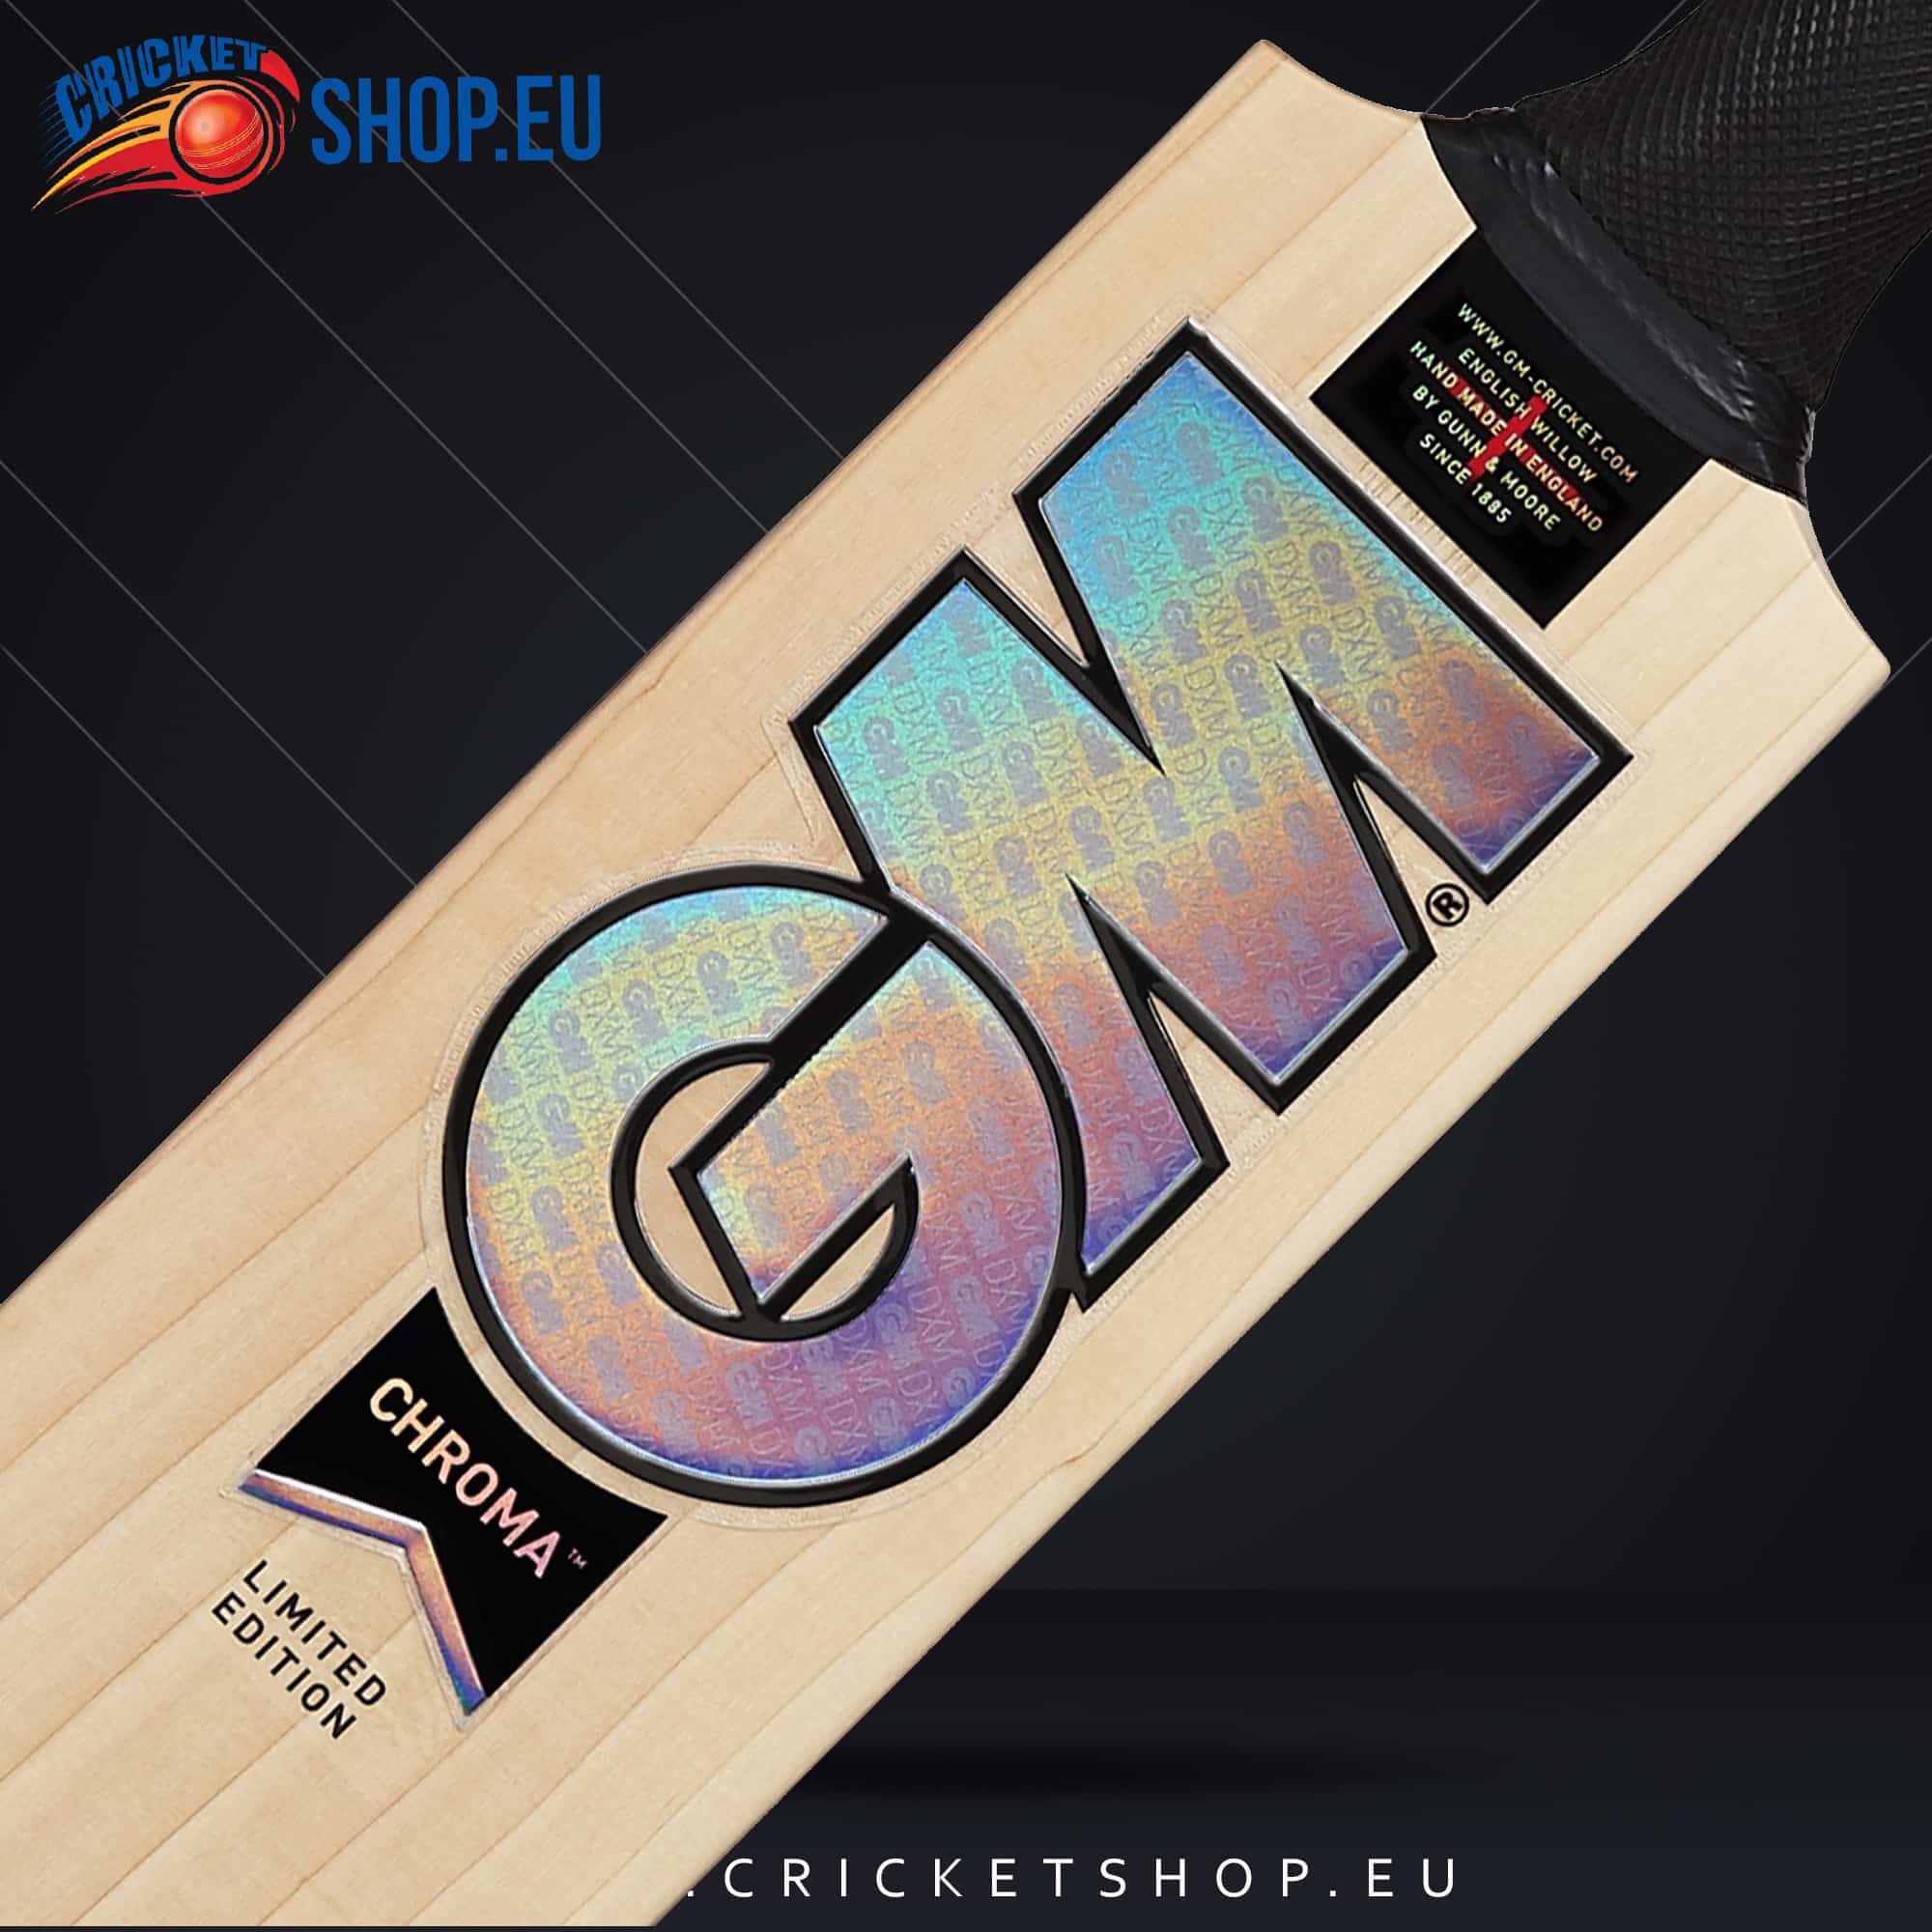 2023 Gunn & Moore Chroma 606 Cricket Bat